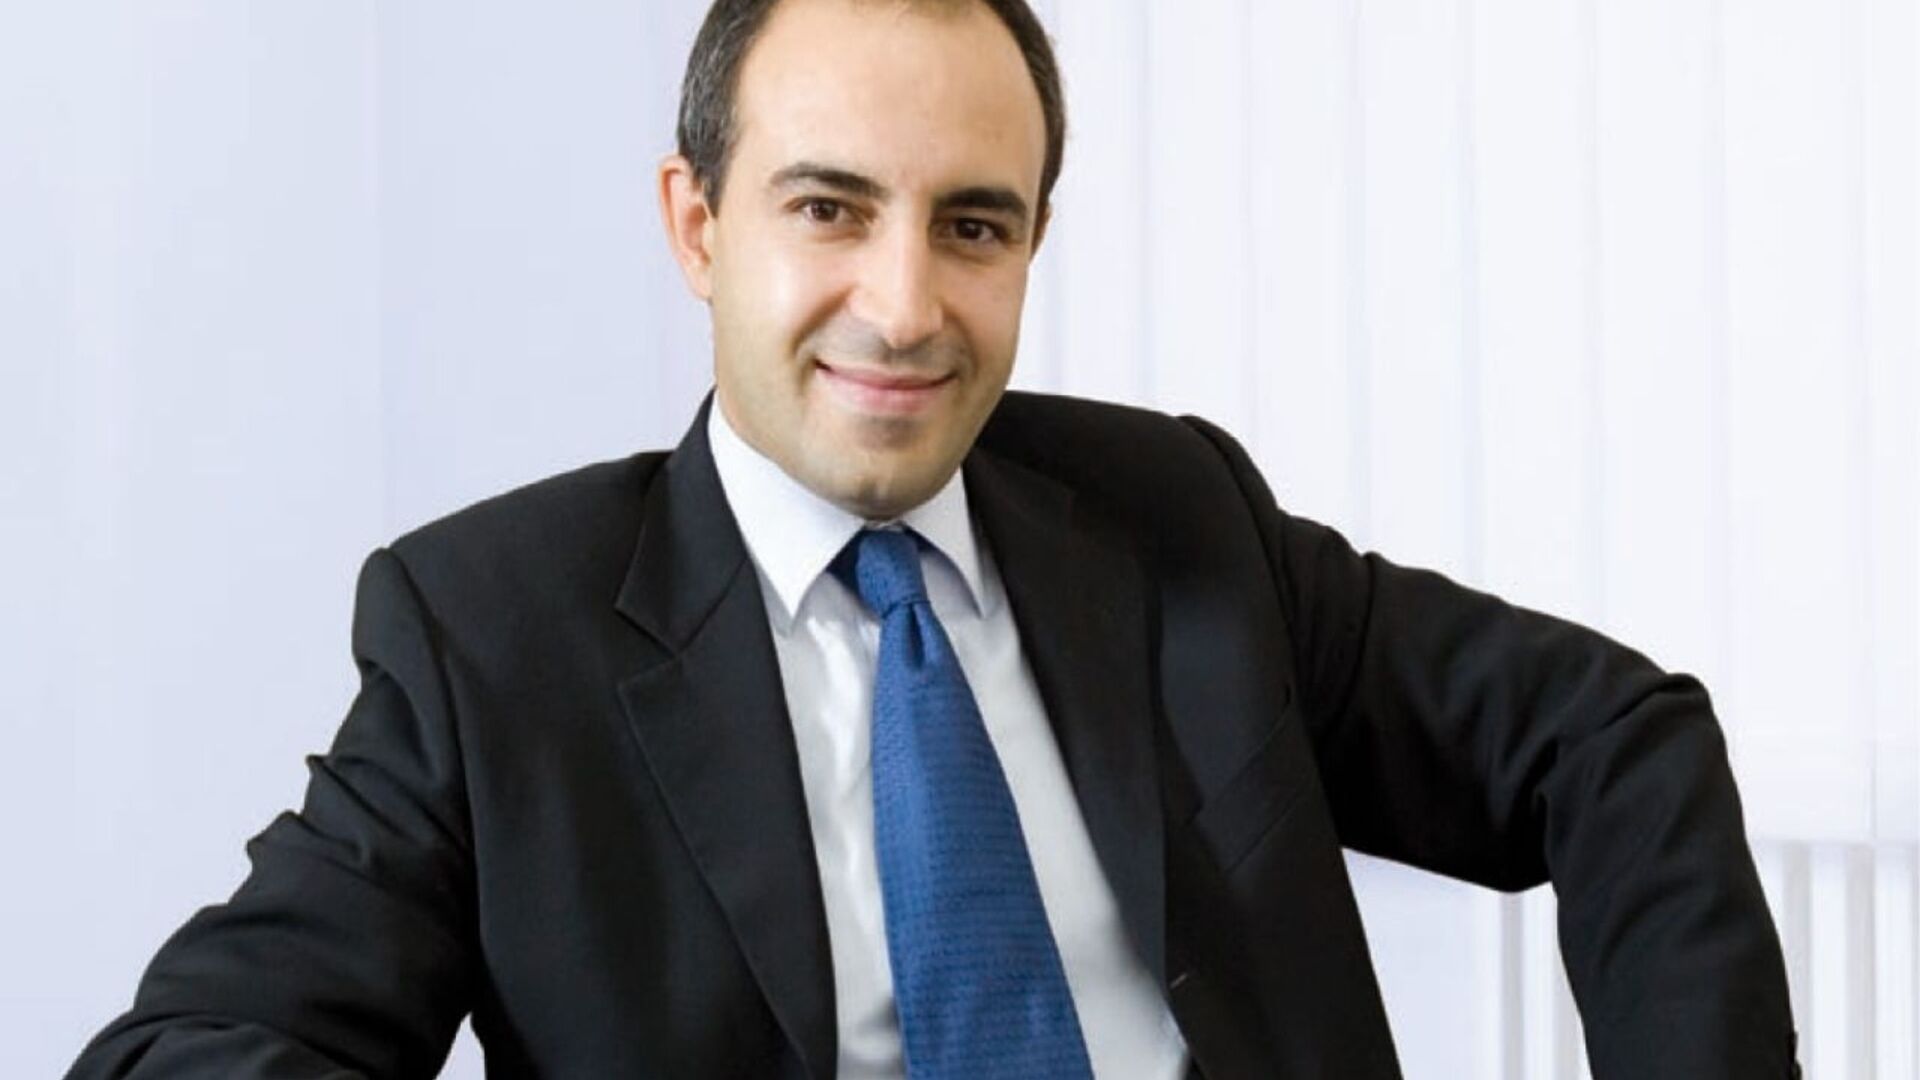 Fabio Pagano 是 SitoVivo 首席執行官